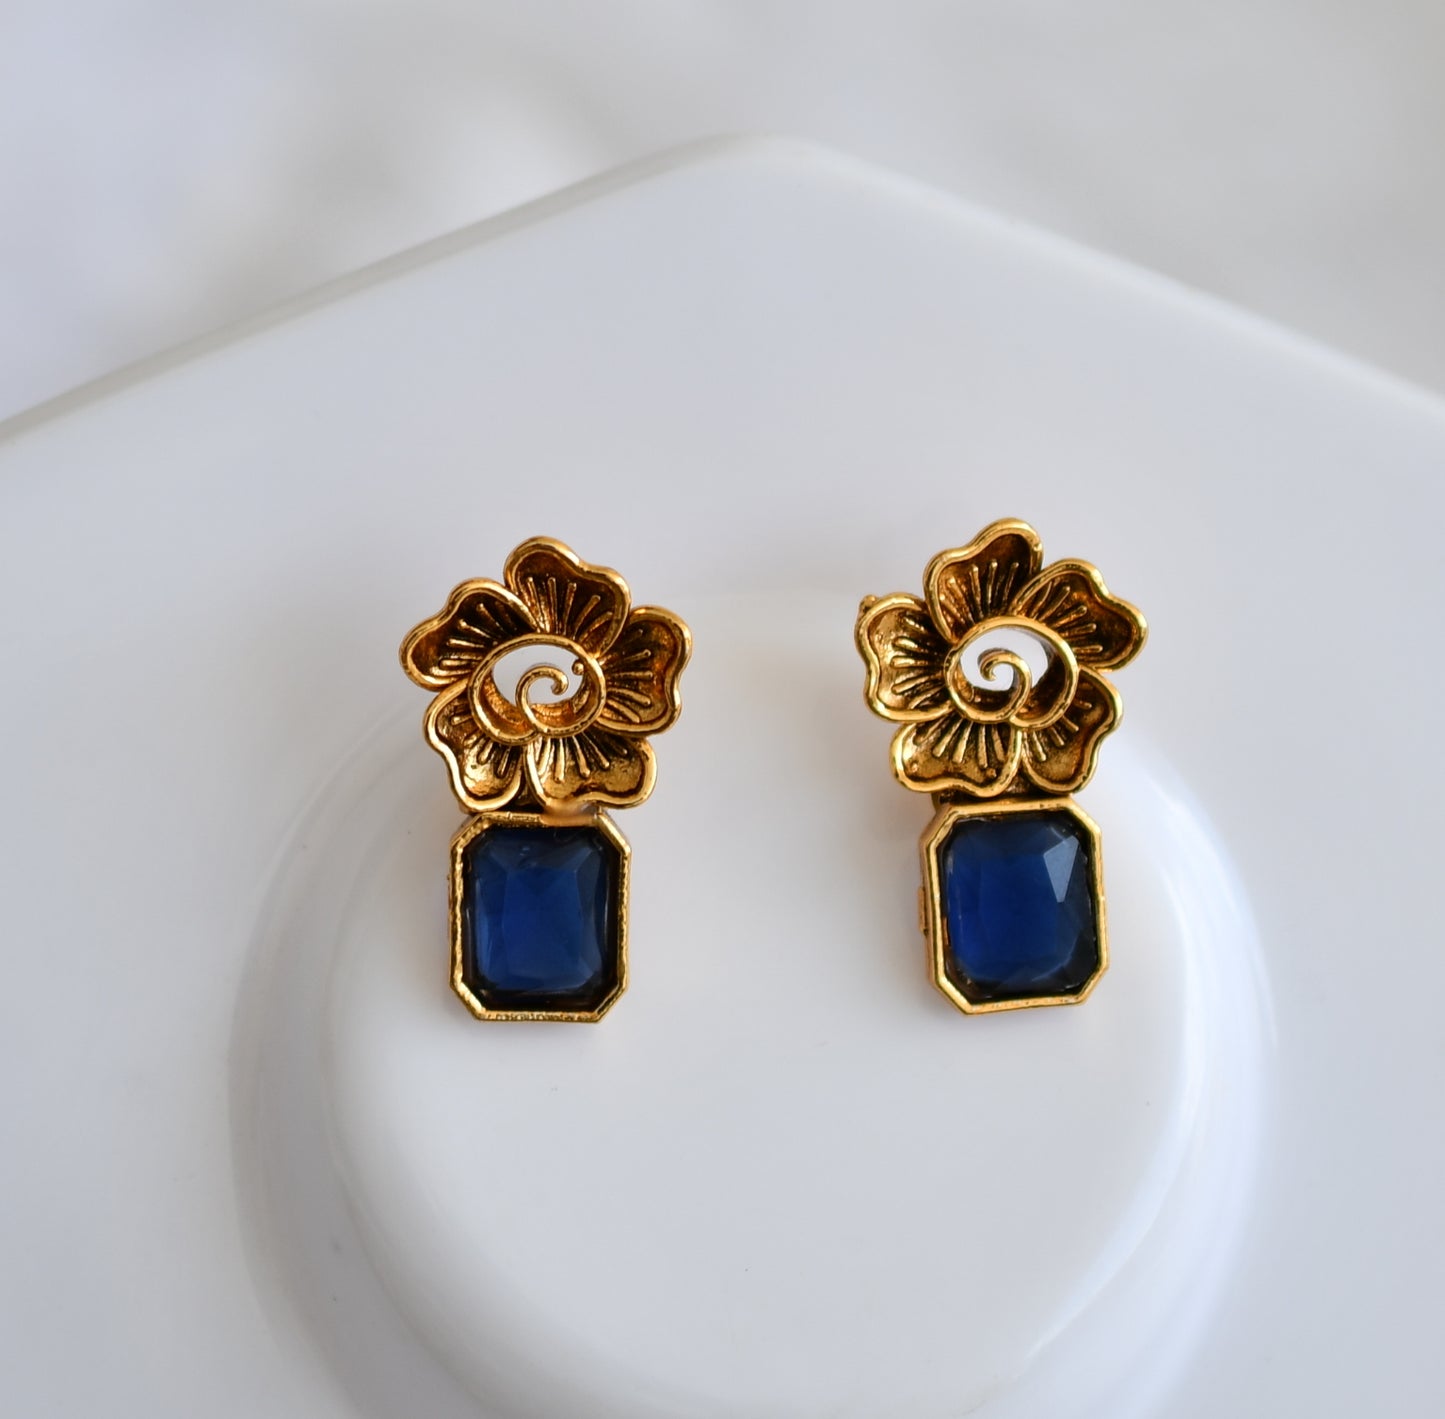 Antique gold flower blue block stone necklace set dj-38688